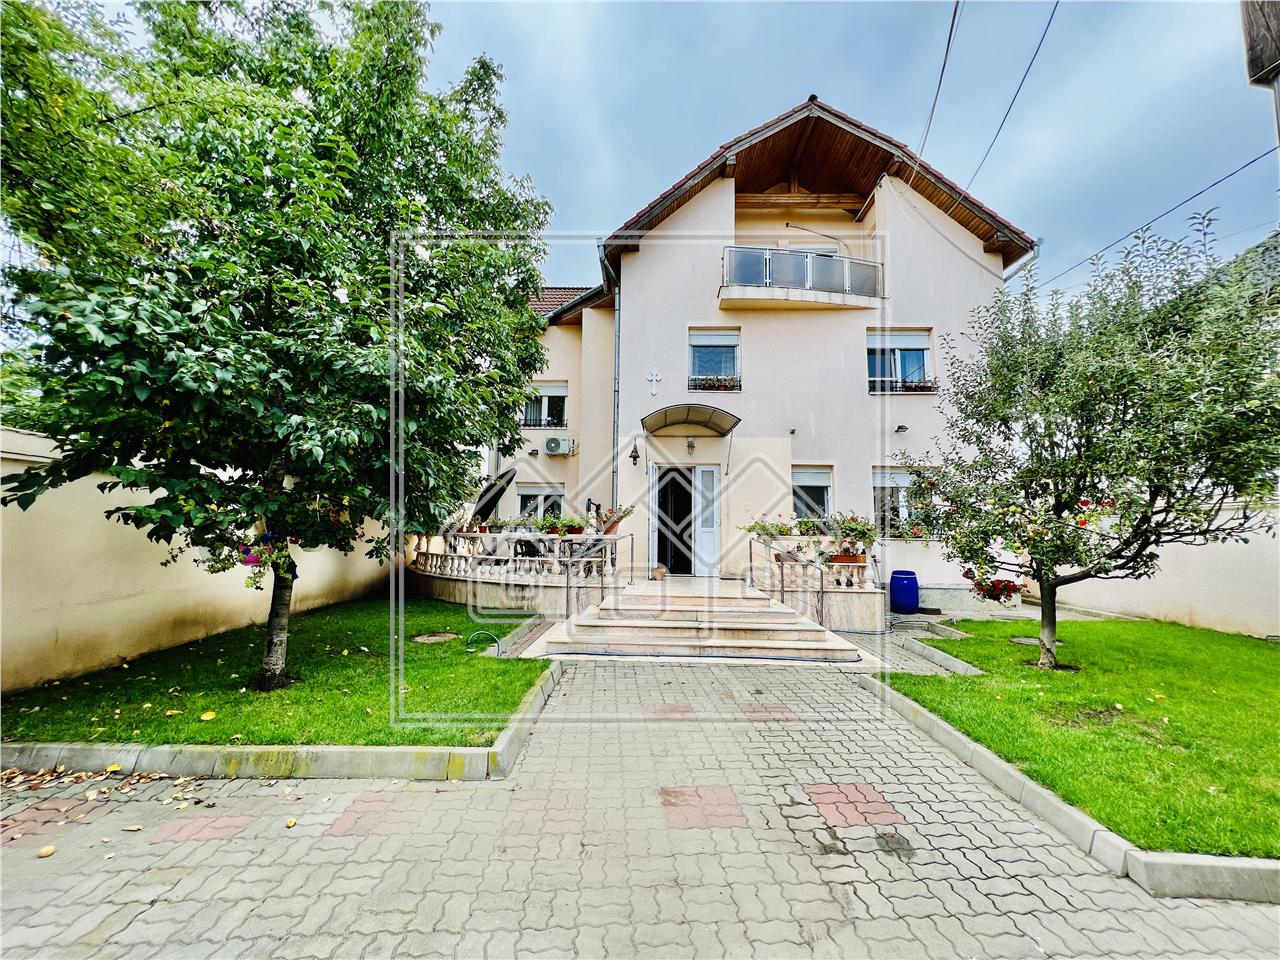 Casa de vanzare in Sibiu - individuala - str. Moldoveanu, teren 400 mp